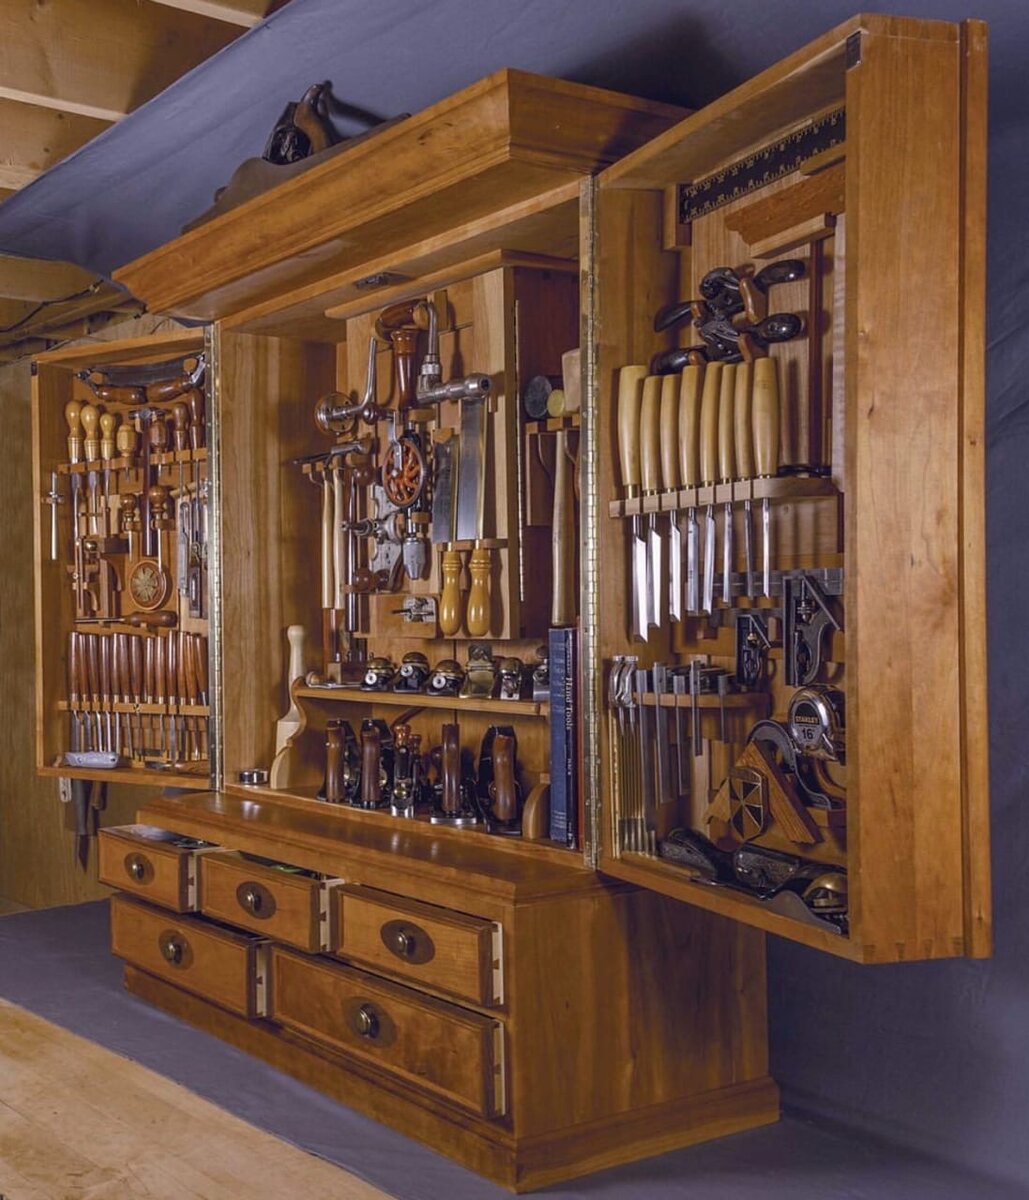 Шкаф для инструментов